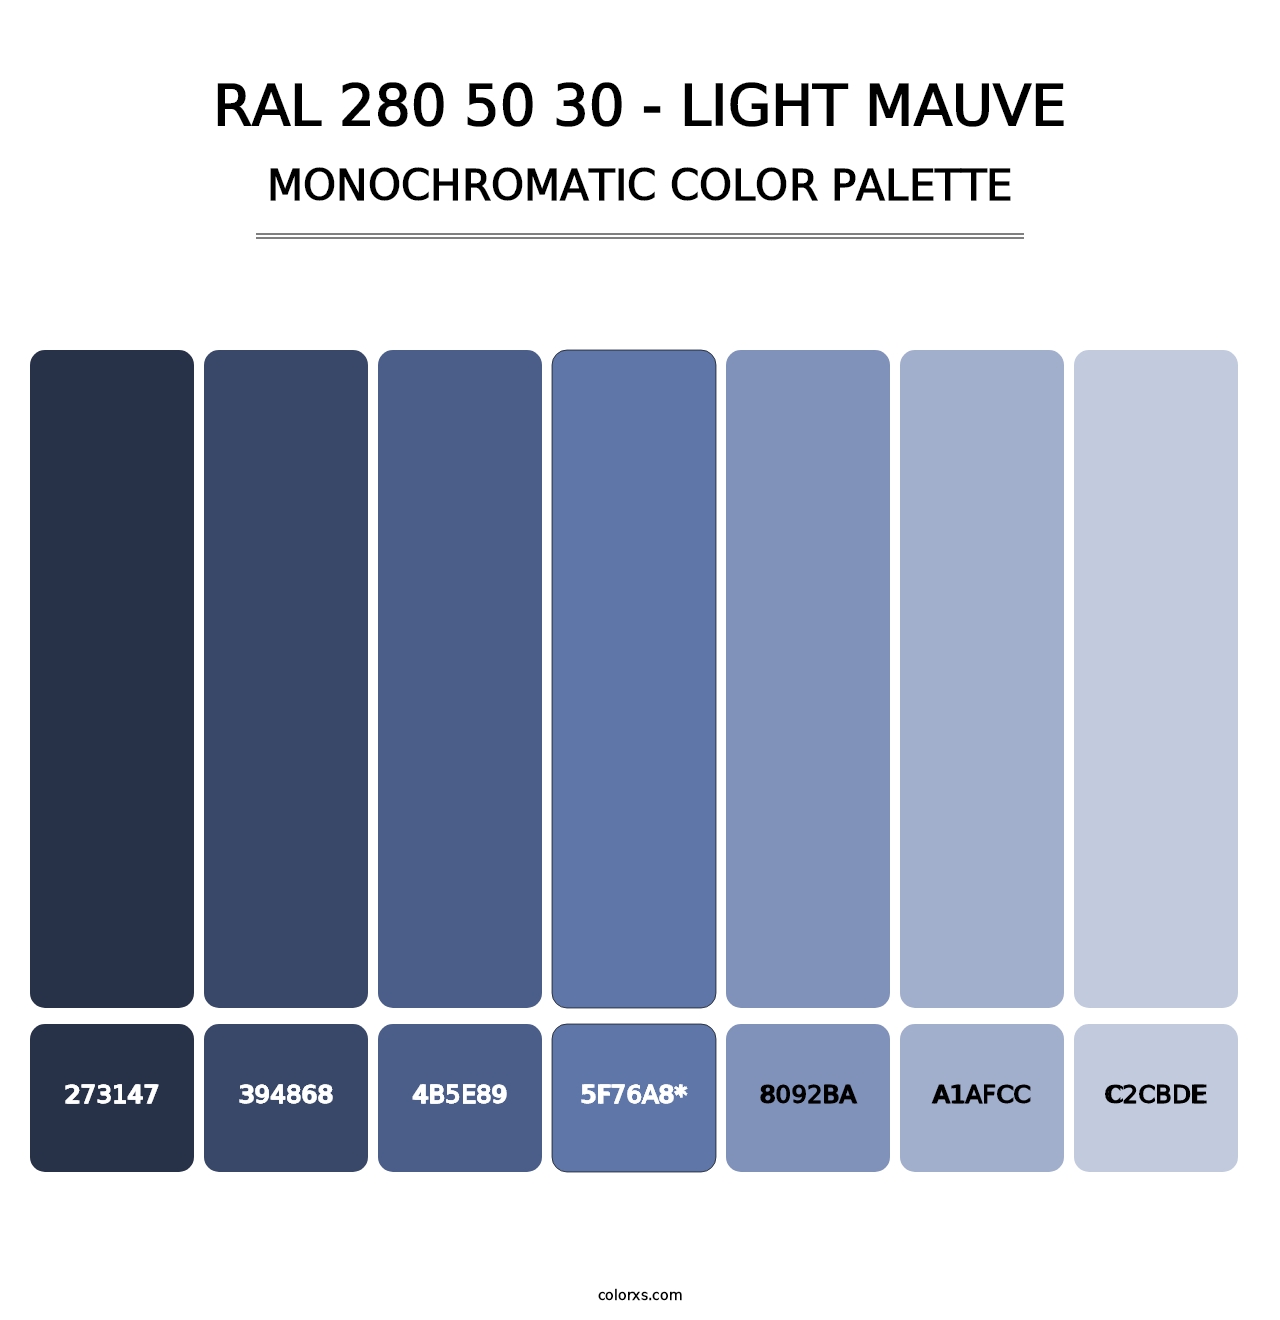 RAL 280 50 30 - Light Mauve - Monochromatic Color Palette